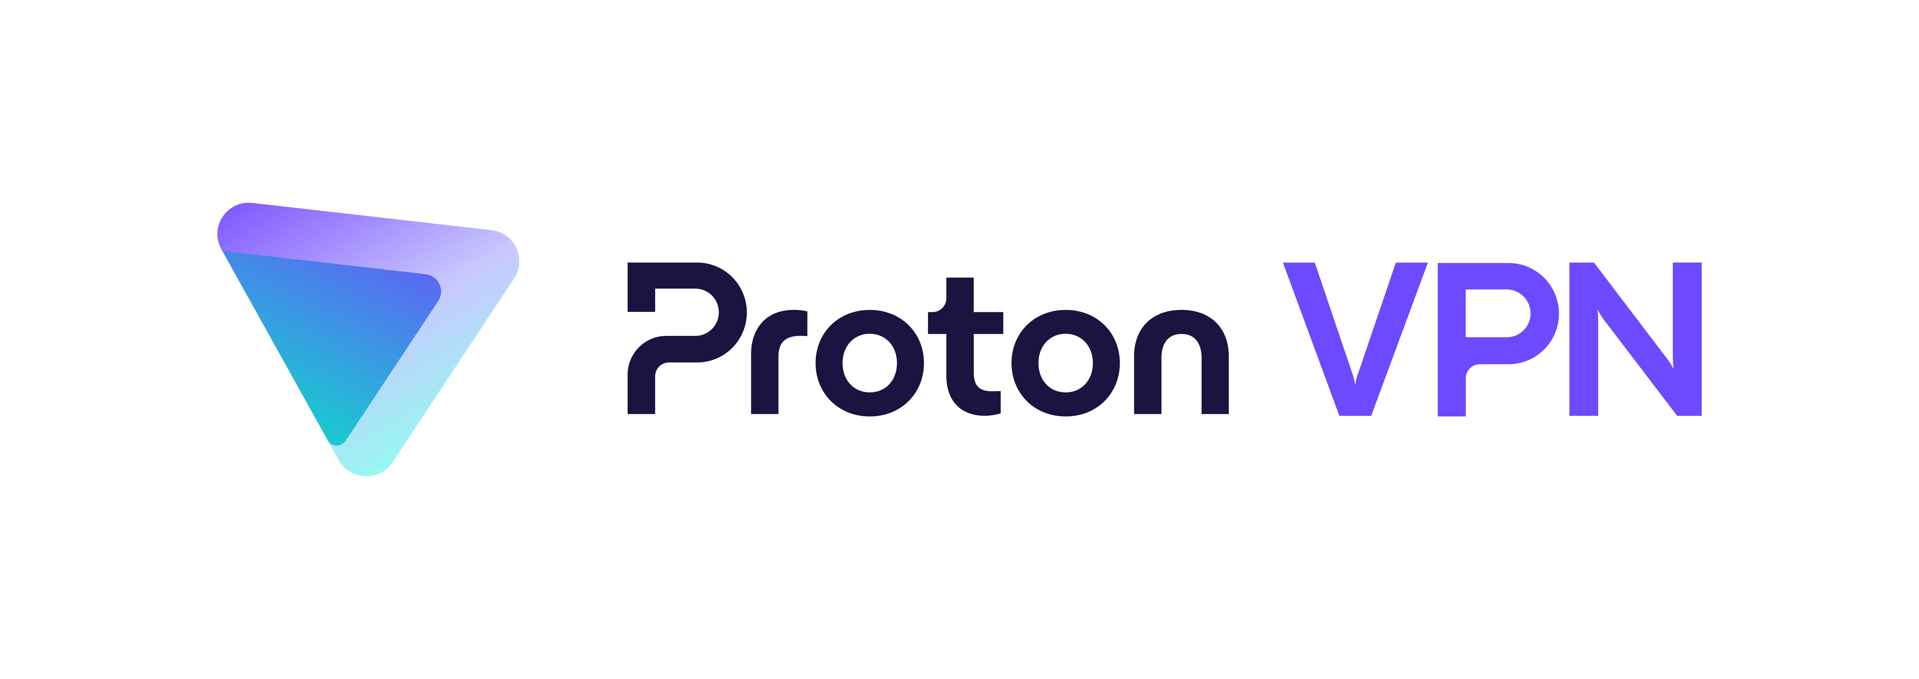 Proton VPN - Proton VPN